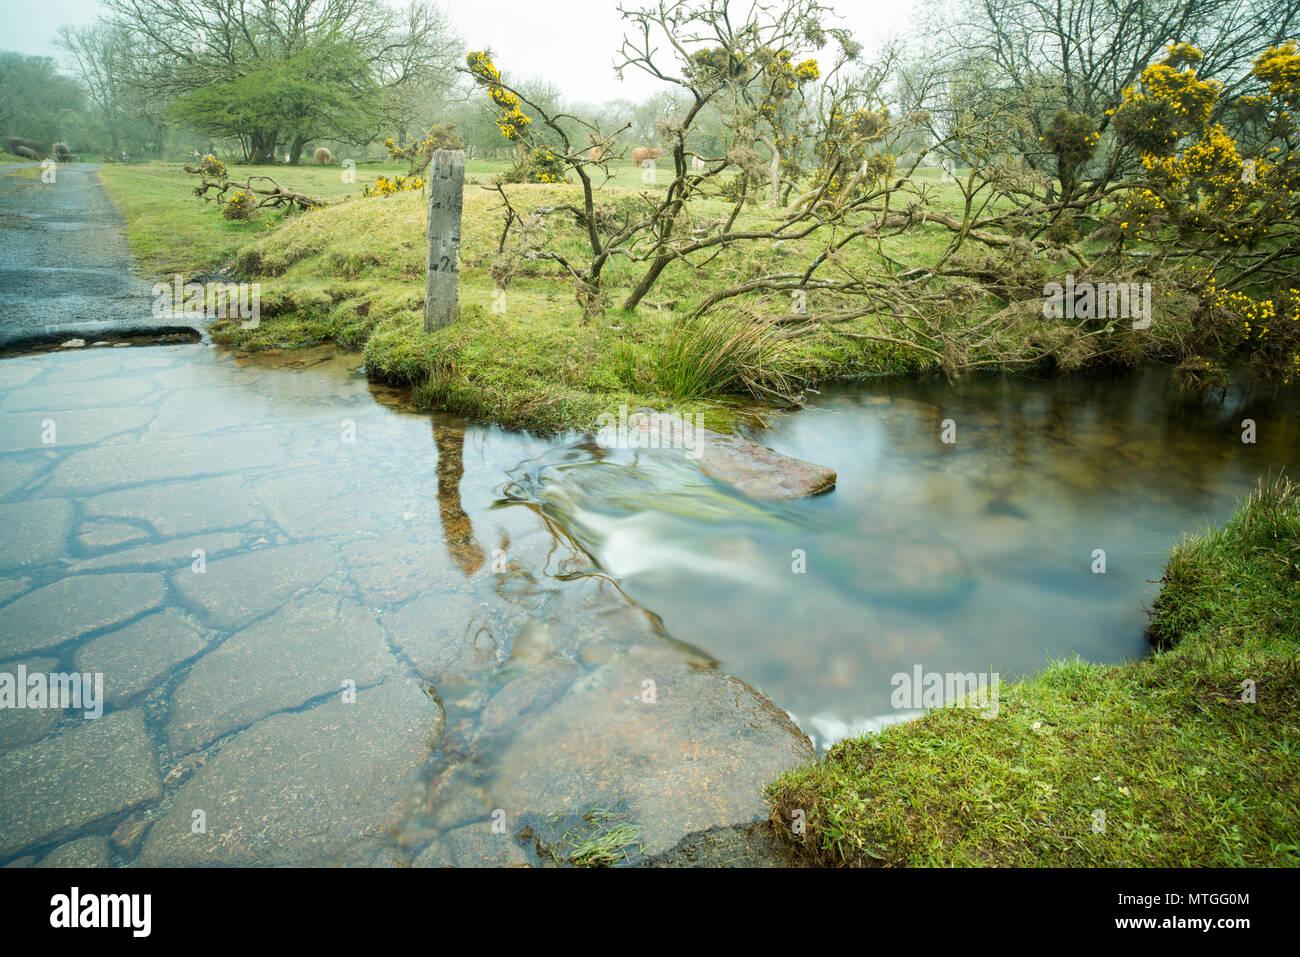 Ford attraverso il piccolo fiume, Penpoint acqua, Bowithick, Cornwall, con lastre di granito in lento movimento di acqua e un vecchio legno marcatore di profondità. Foto Stock